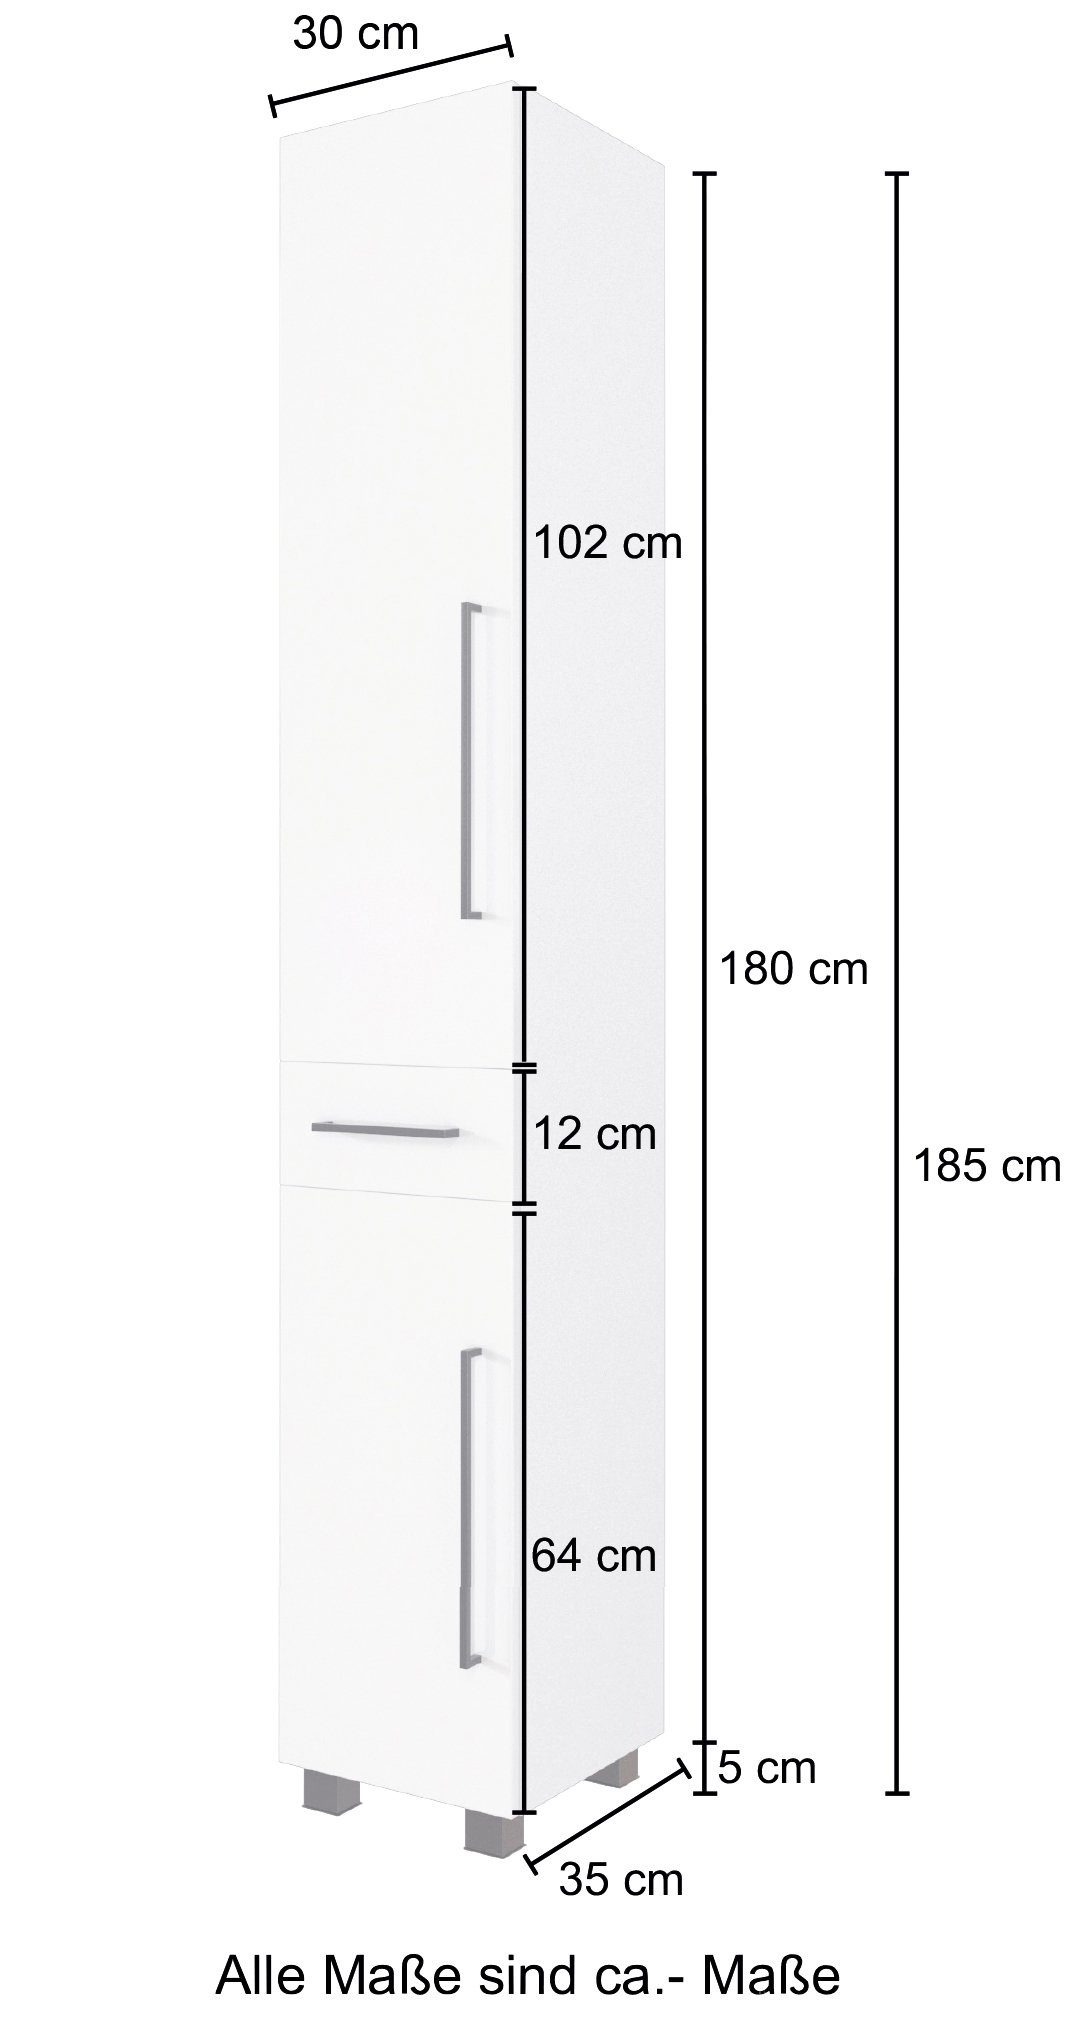 HELD MÖBEL und Seitenschrank Softclose-Funktion mit 30 Breite cm, Luena Metall-Auszug